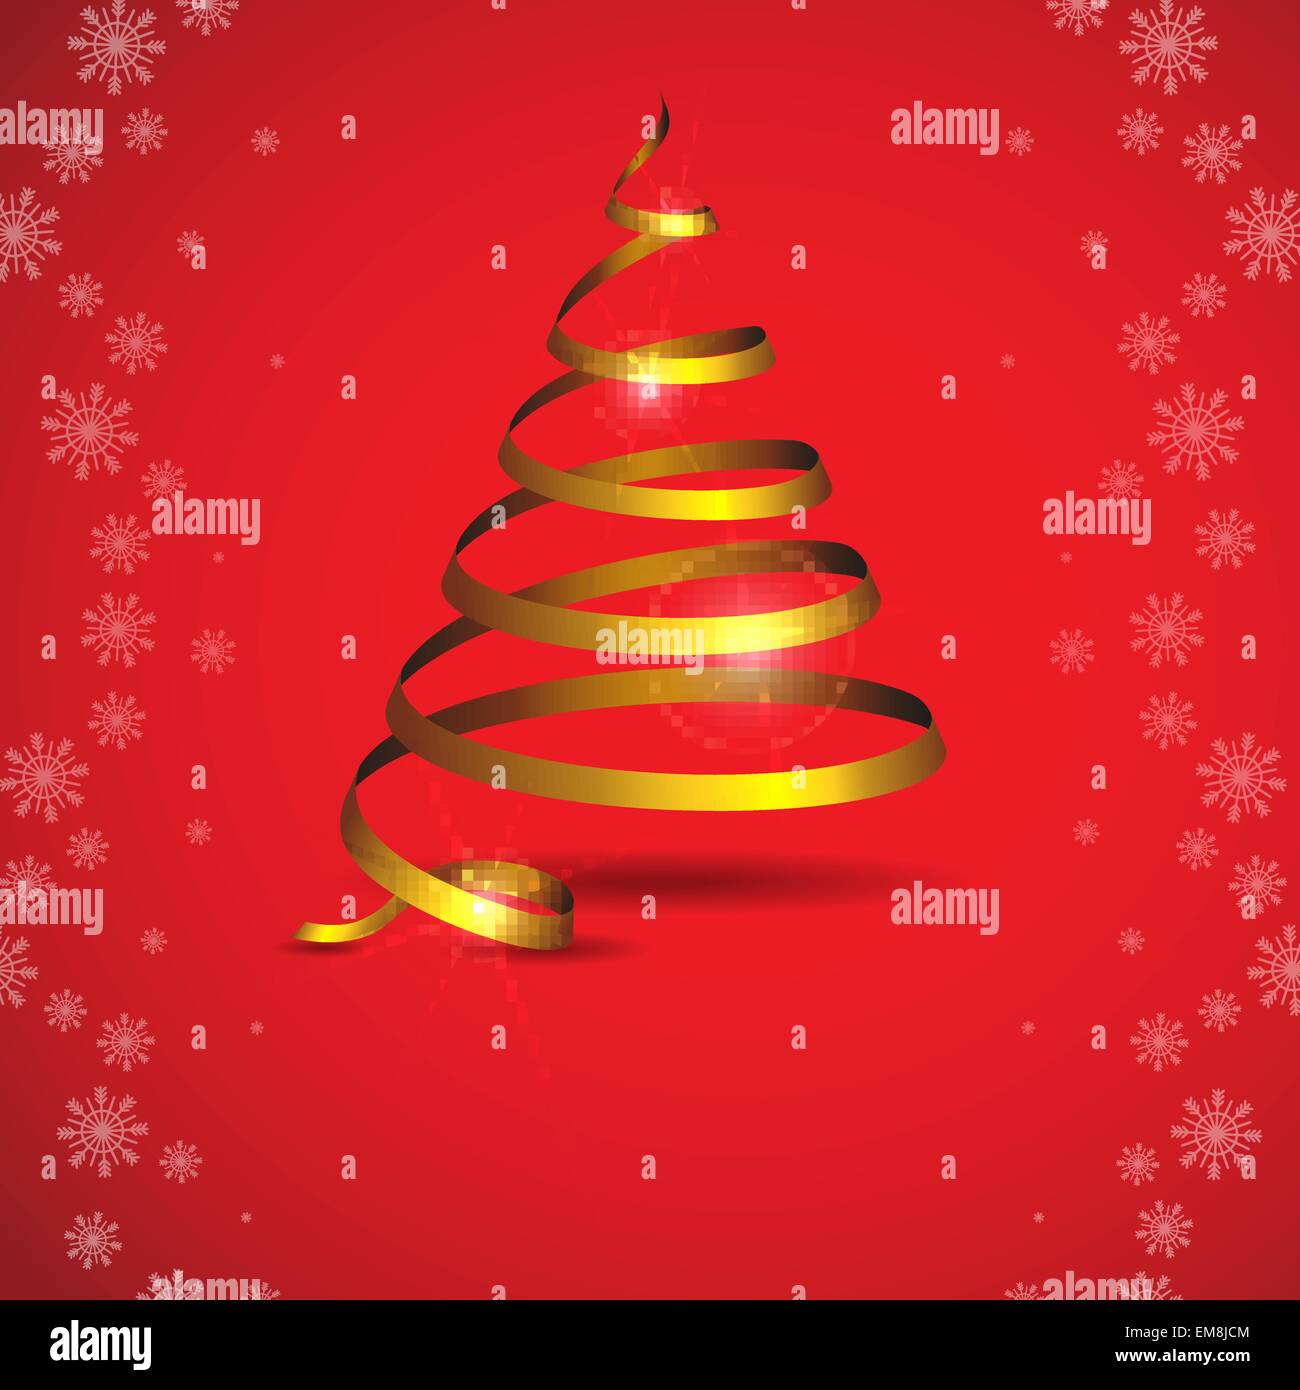 Immagini Natalizie Stilizzate.Nastro Stilizzata Albero Di Natale Immagine E Vettoriale Alamy